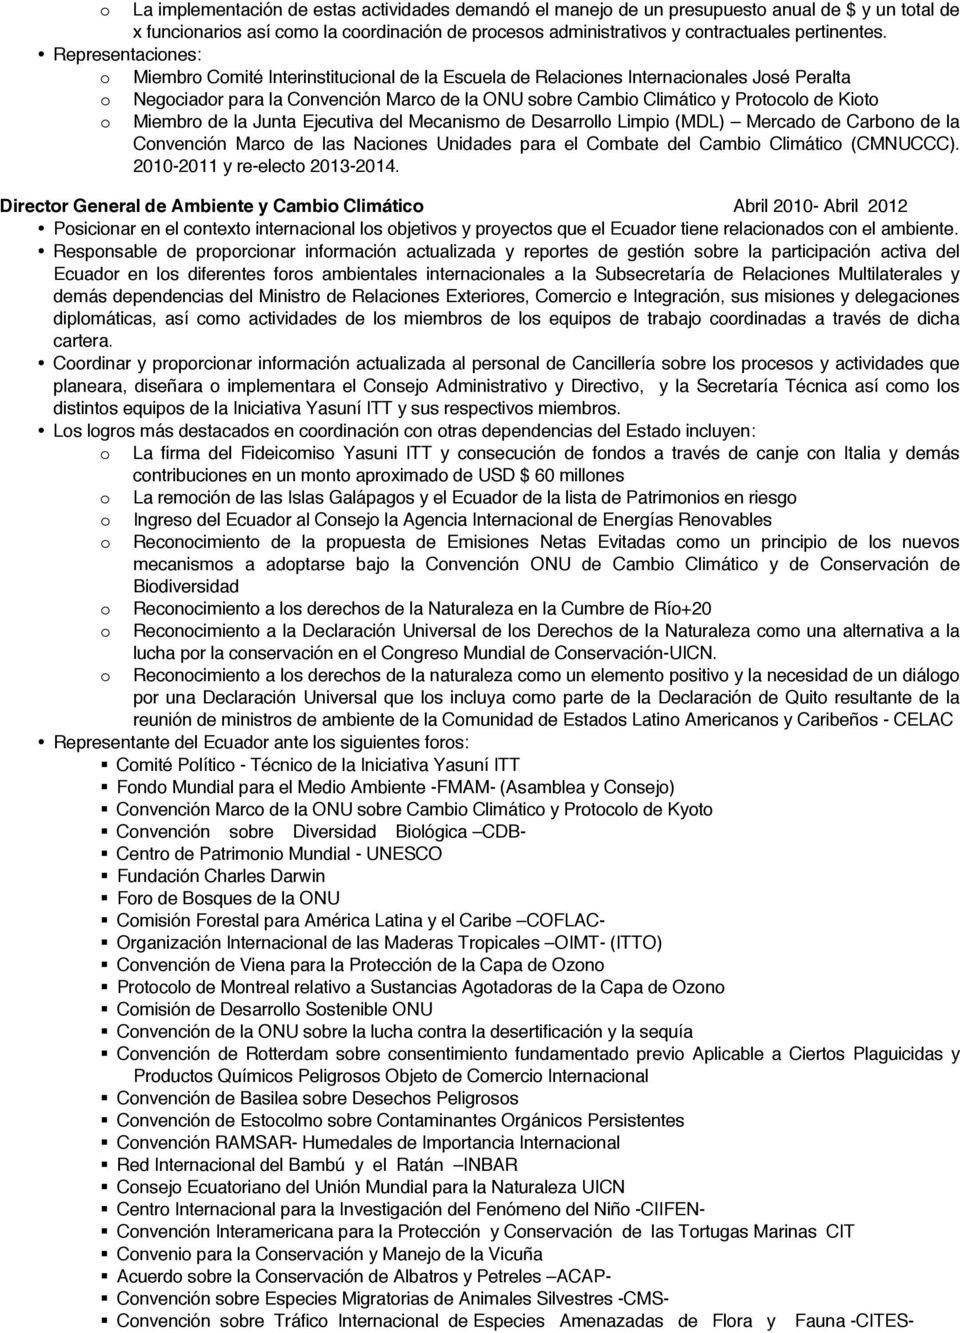 Ejecutiva del Mecanism de Desarrll Limpi (MDL) Mercad de Carbn de la Cnvención Marc de las Nacines Unidades para el Cmbate del Cambi Climátic (CMNUCCC). 2010-2011 y re-elect 2013-2014.